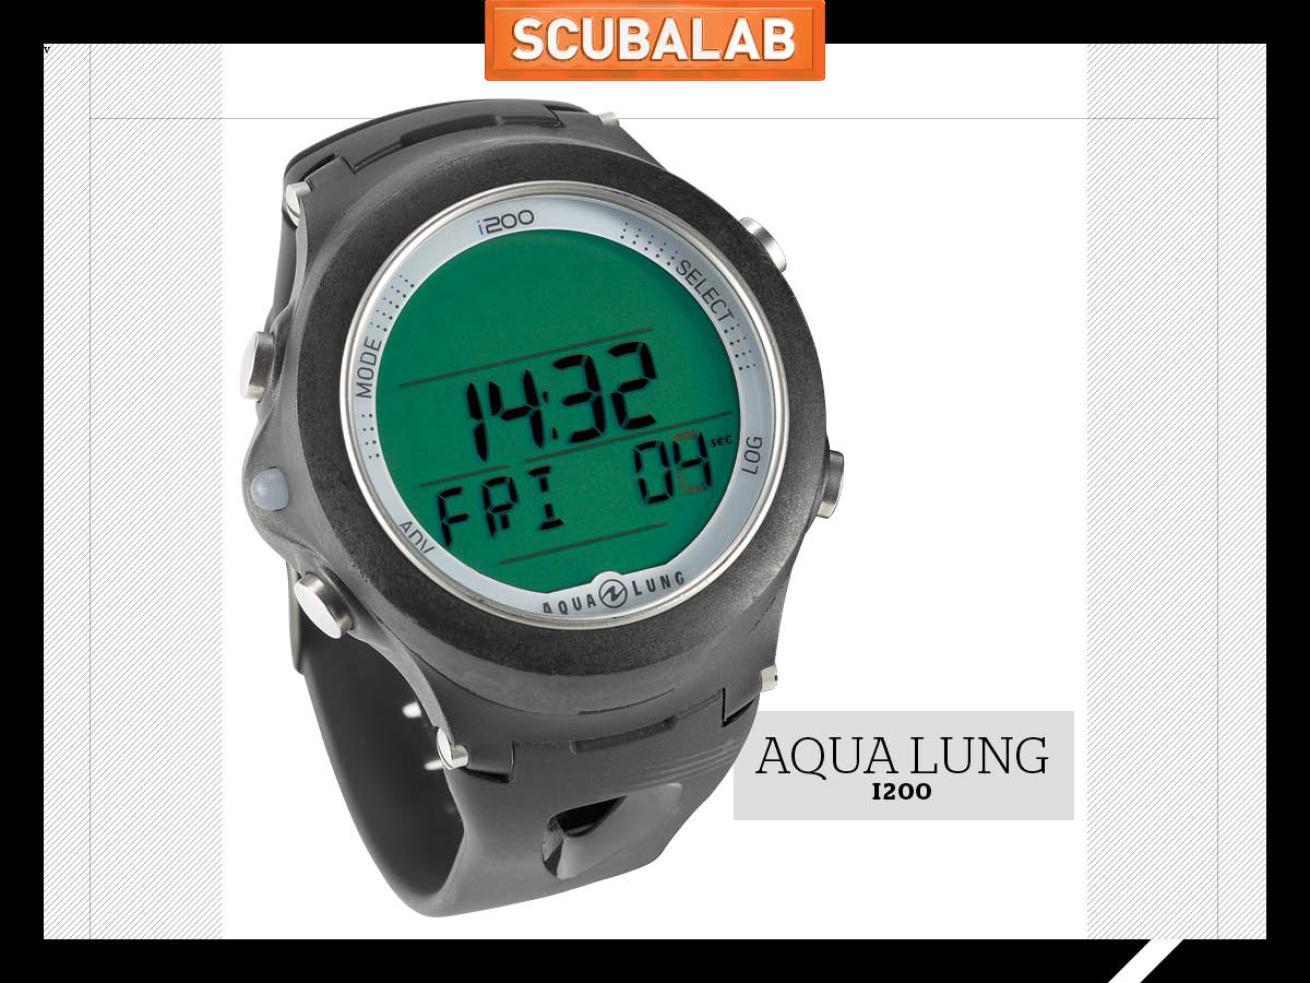 Aqua Lung i200 dive computer ScubaLab gear